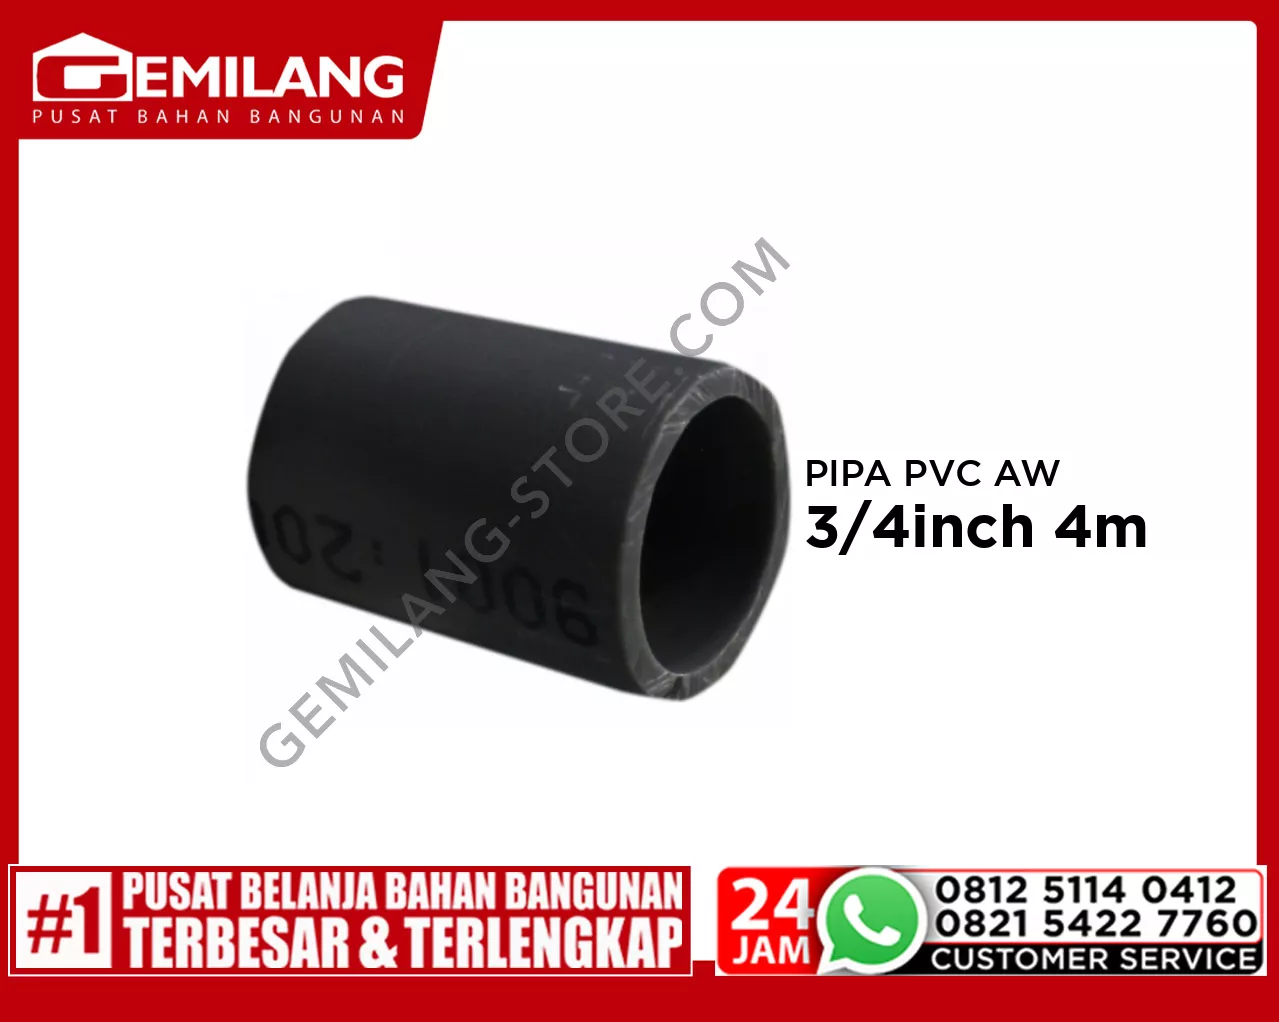 LANGGENG PIPA PVC AW ABU-ABU 3/4inch 4m